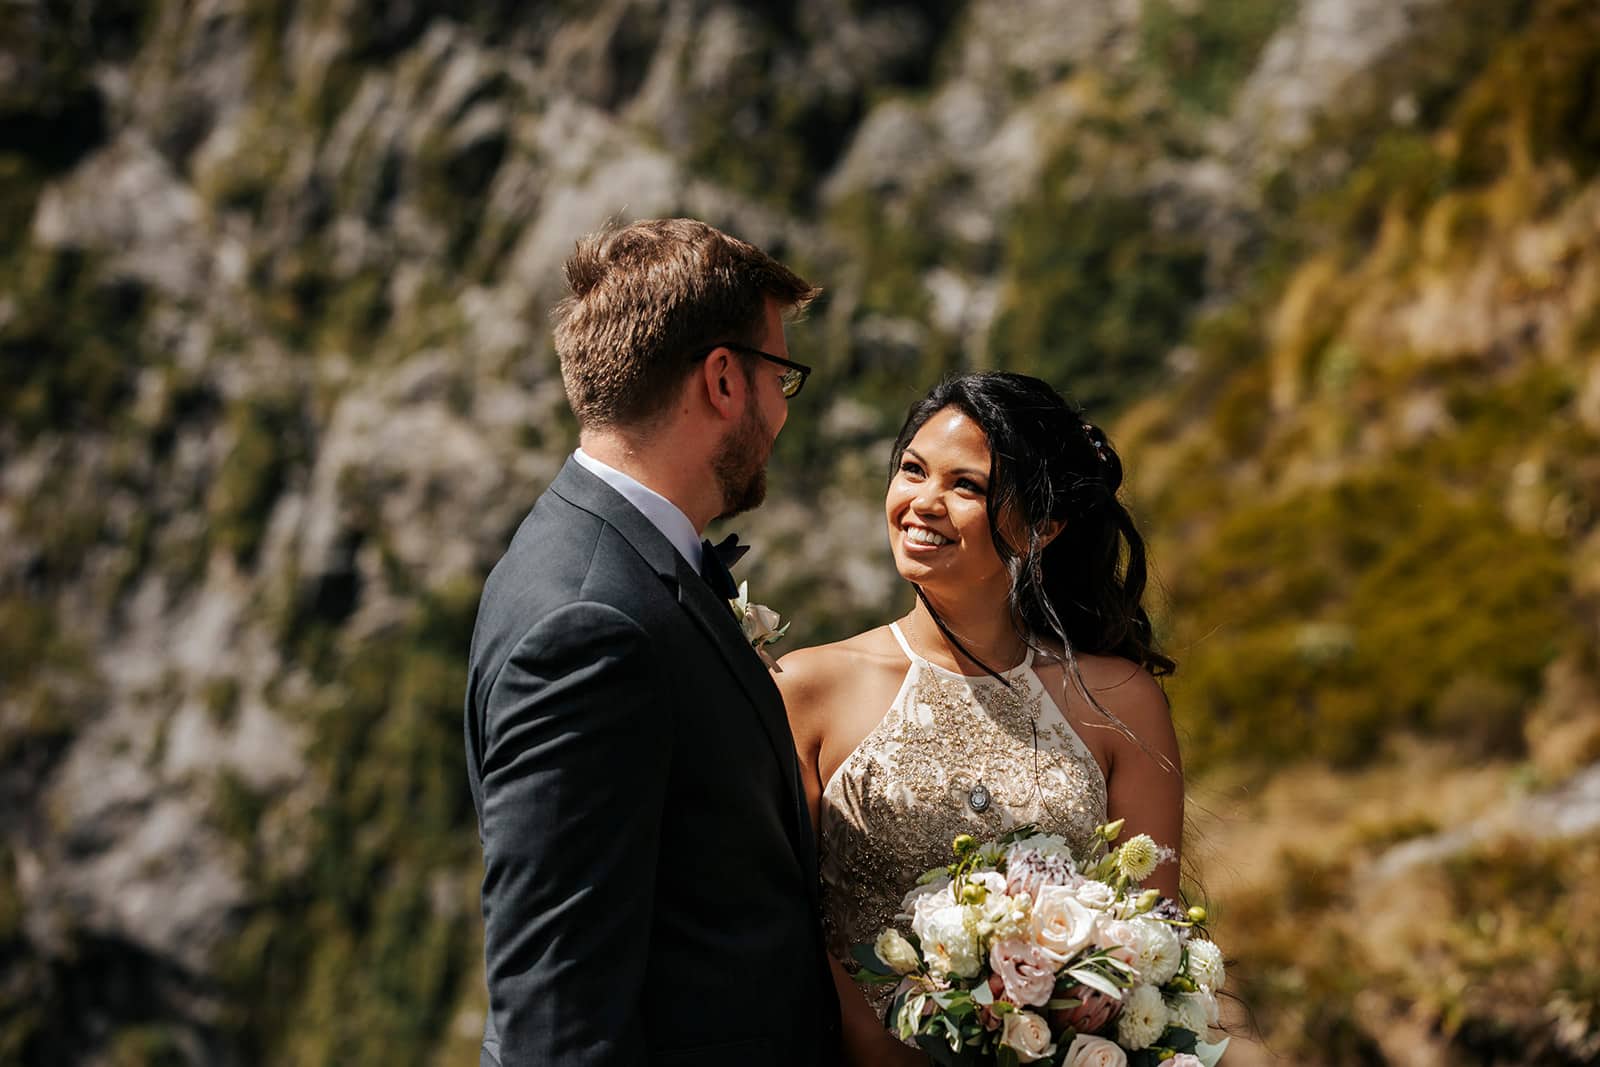 Adventure Wedding in New Zealand